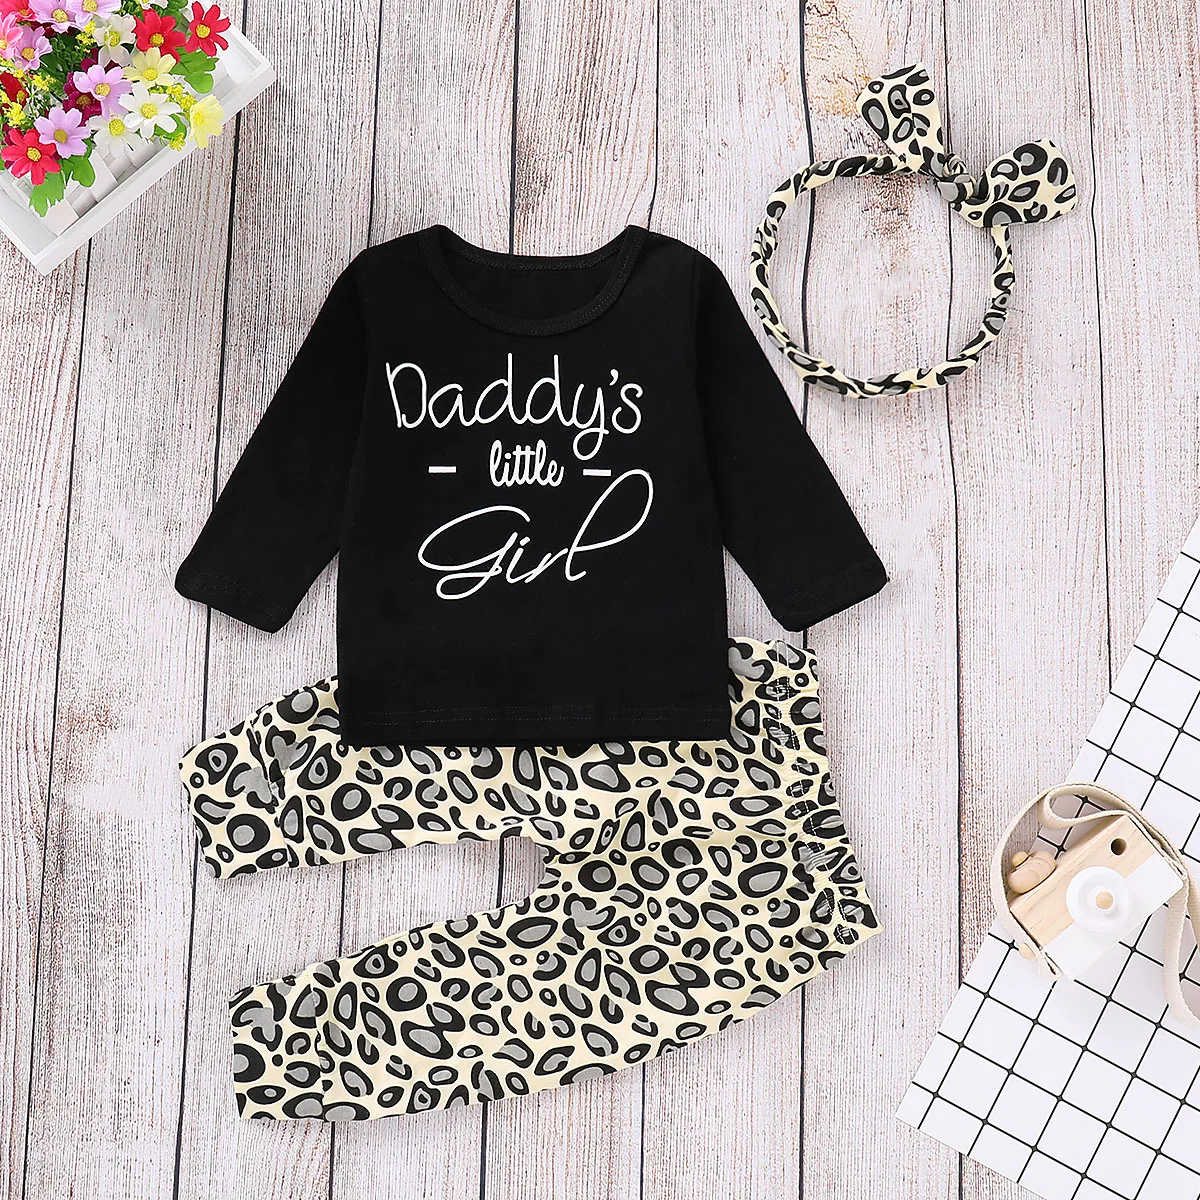 Одежда для новорожденных девочек, одежда с леопардовым принтом, футболка, штаны, спортивный костюм, Детский комплект